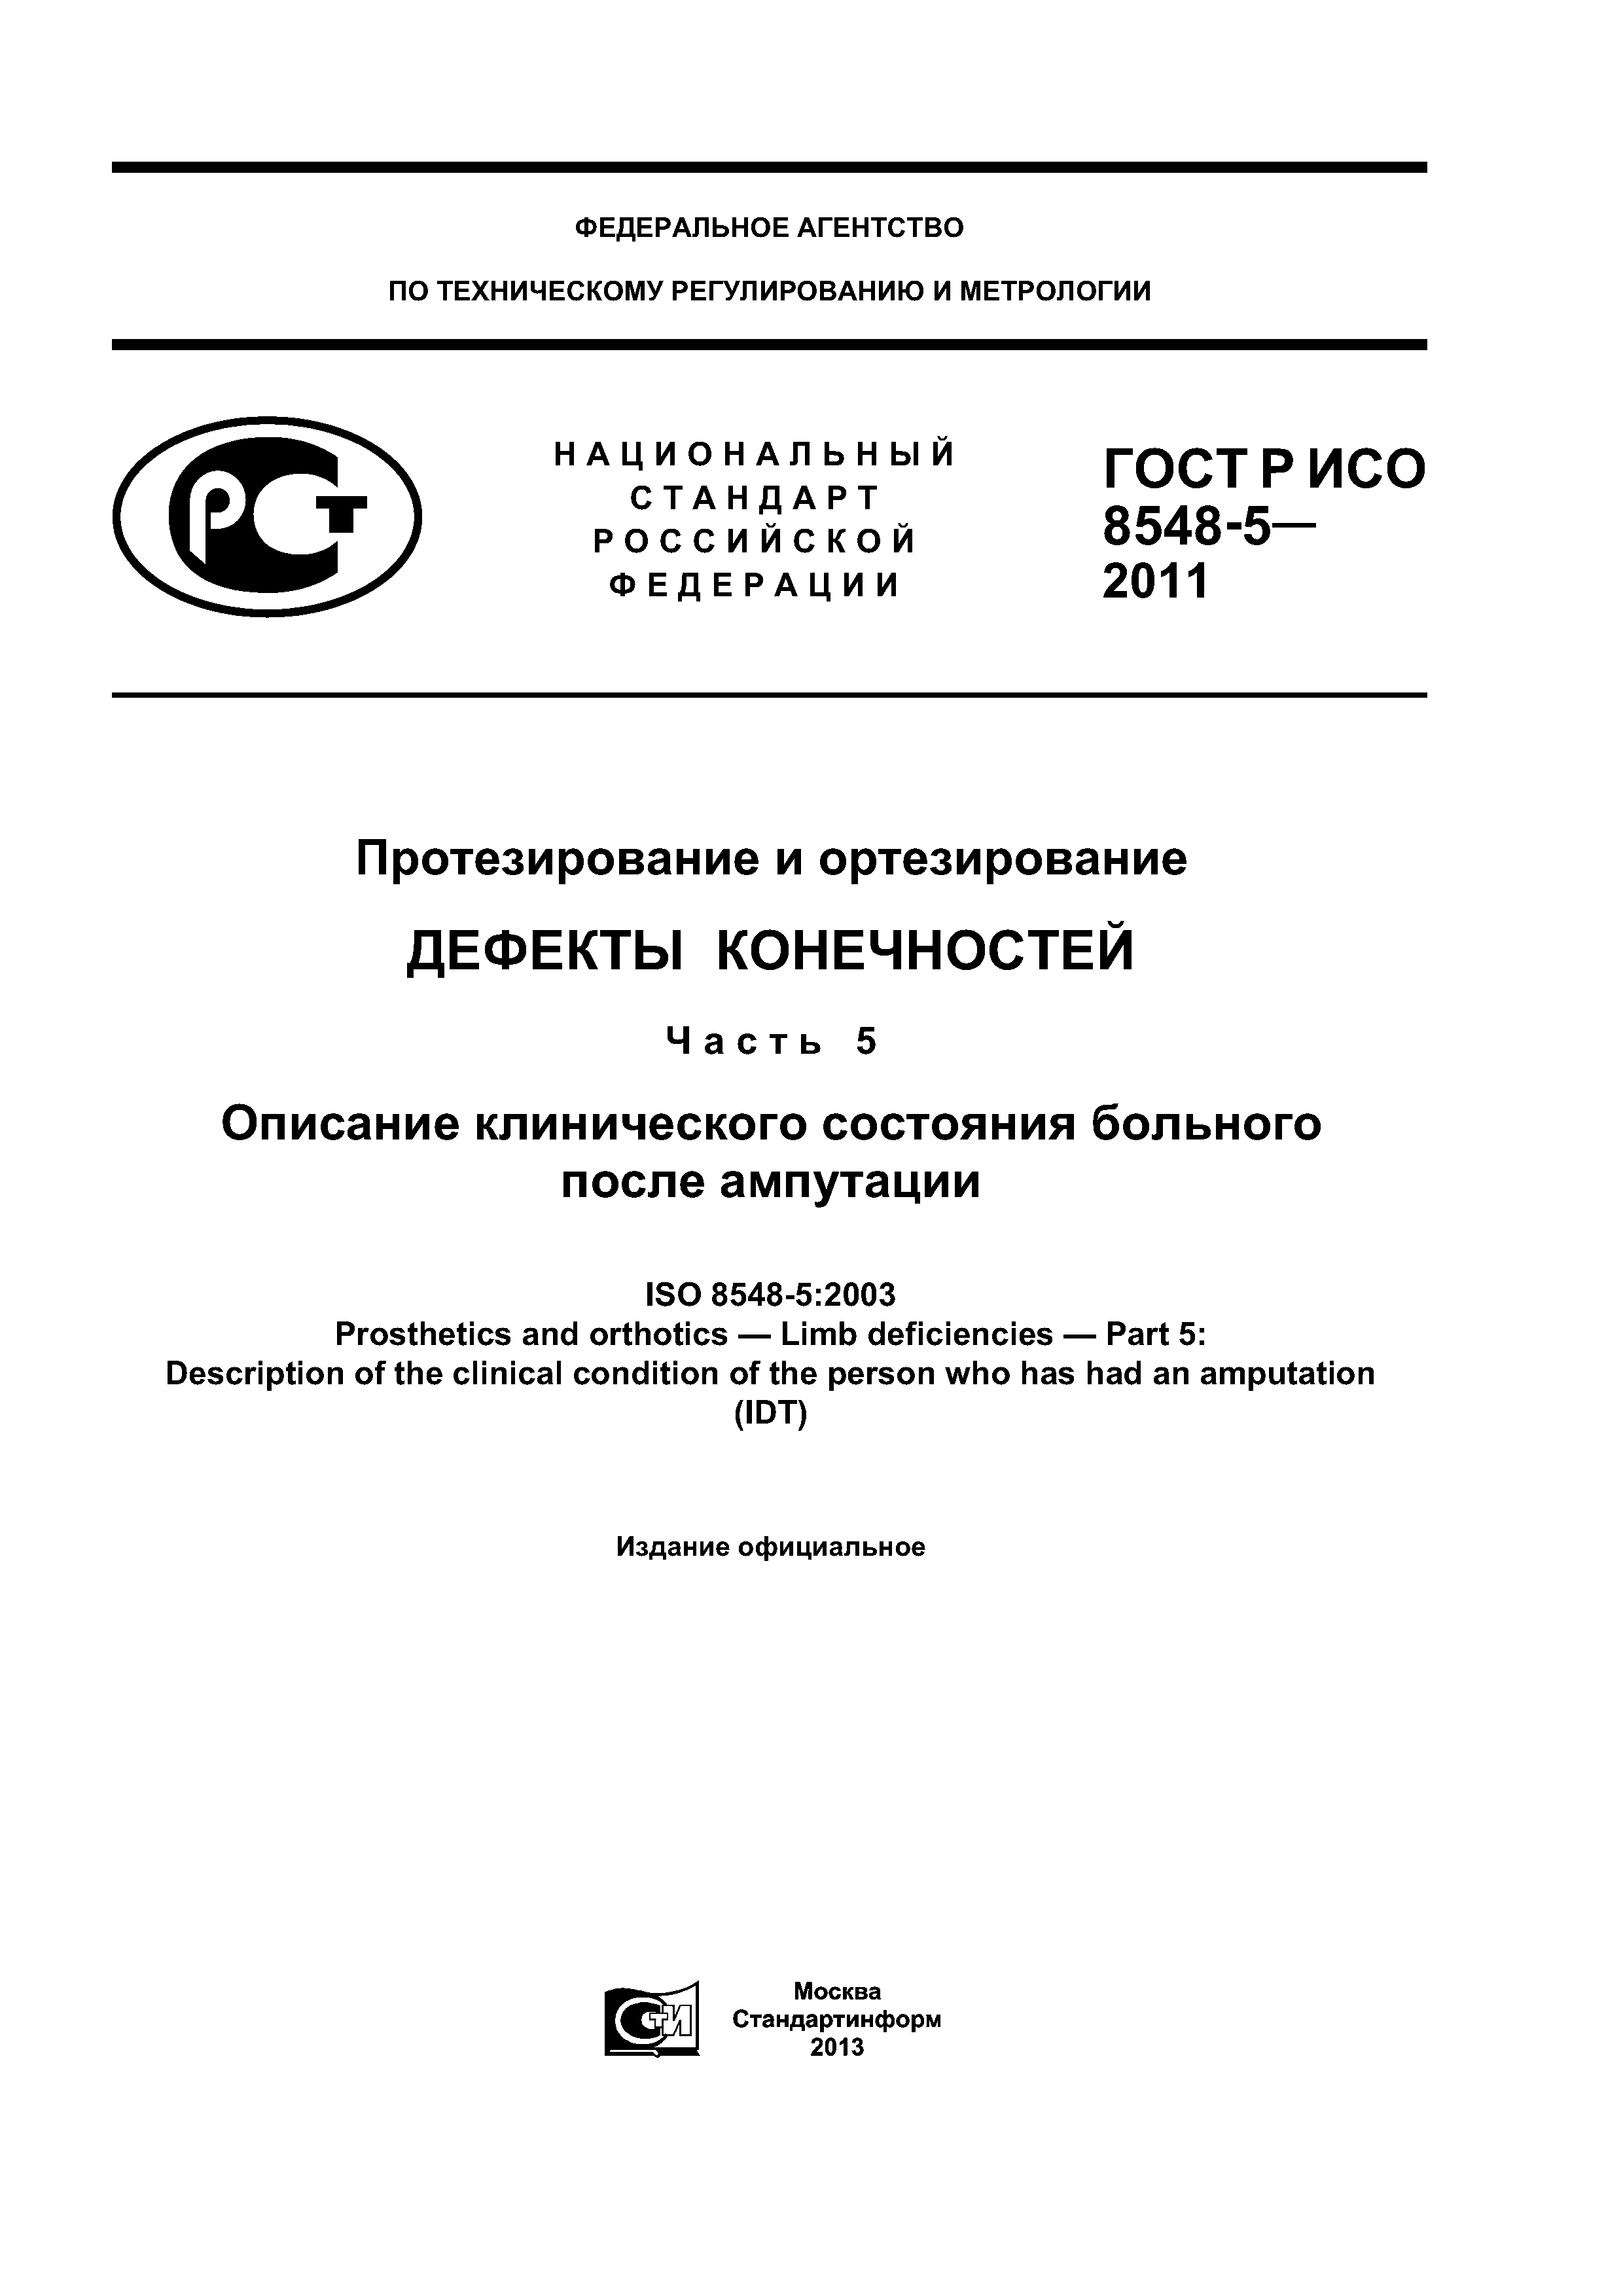 ГОСТ Р ИСО 8548-5-2011